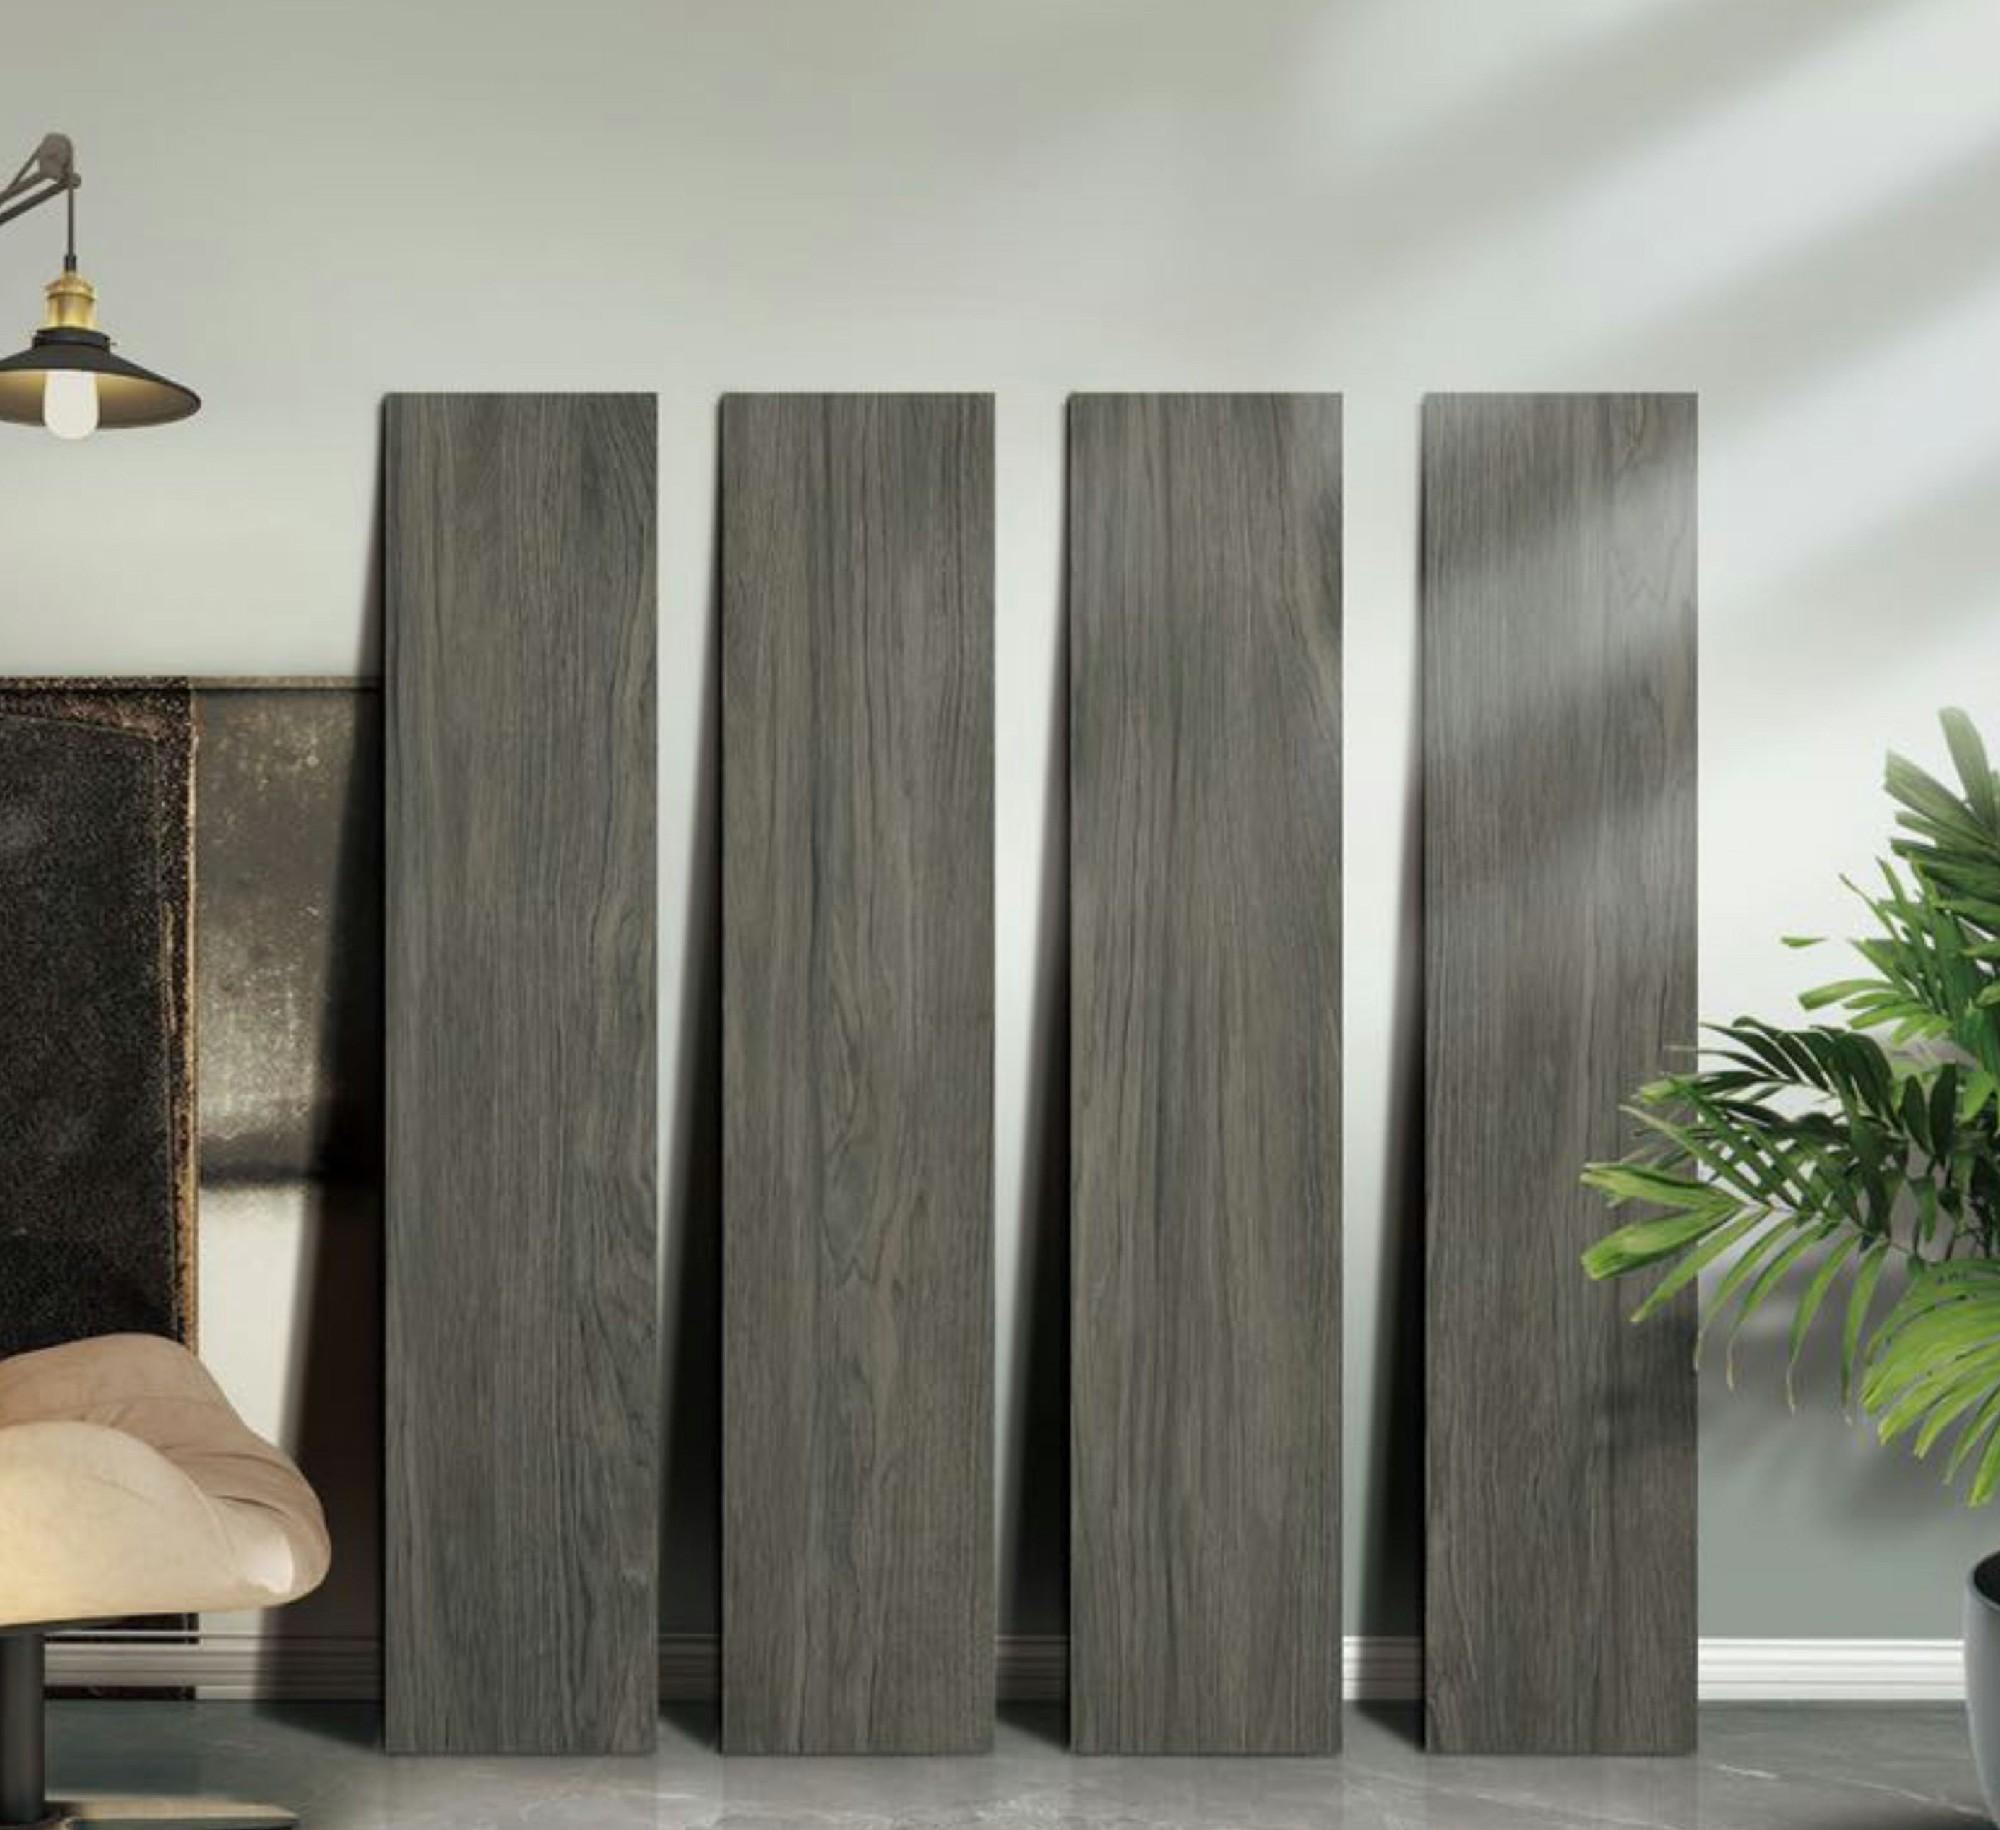 20x120cm 自然木紋磚 瓷磚 仿古磚 - SE12305SC